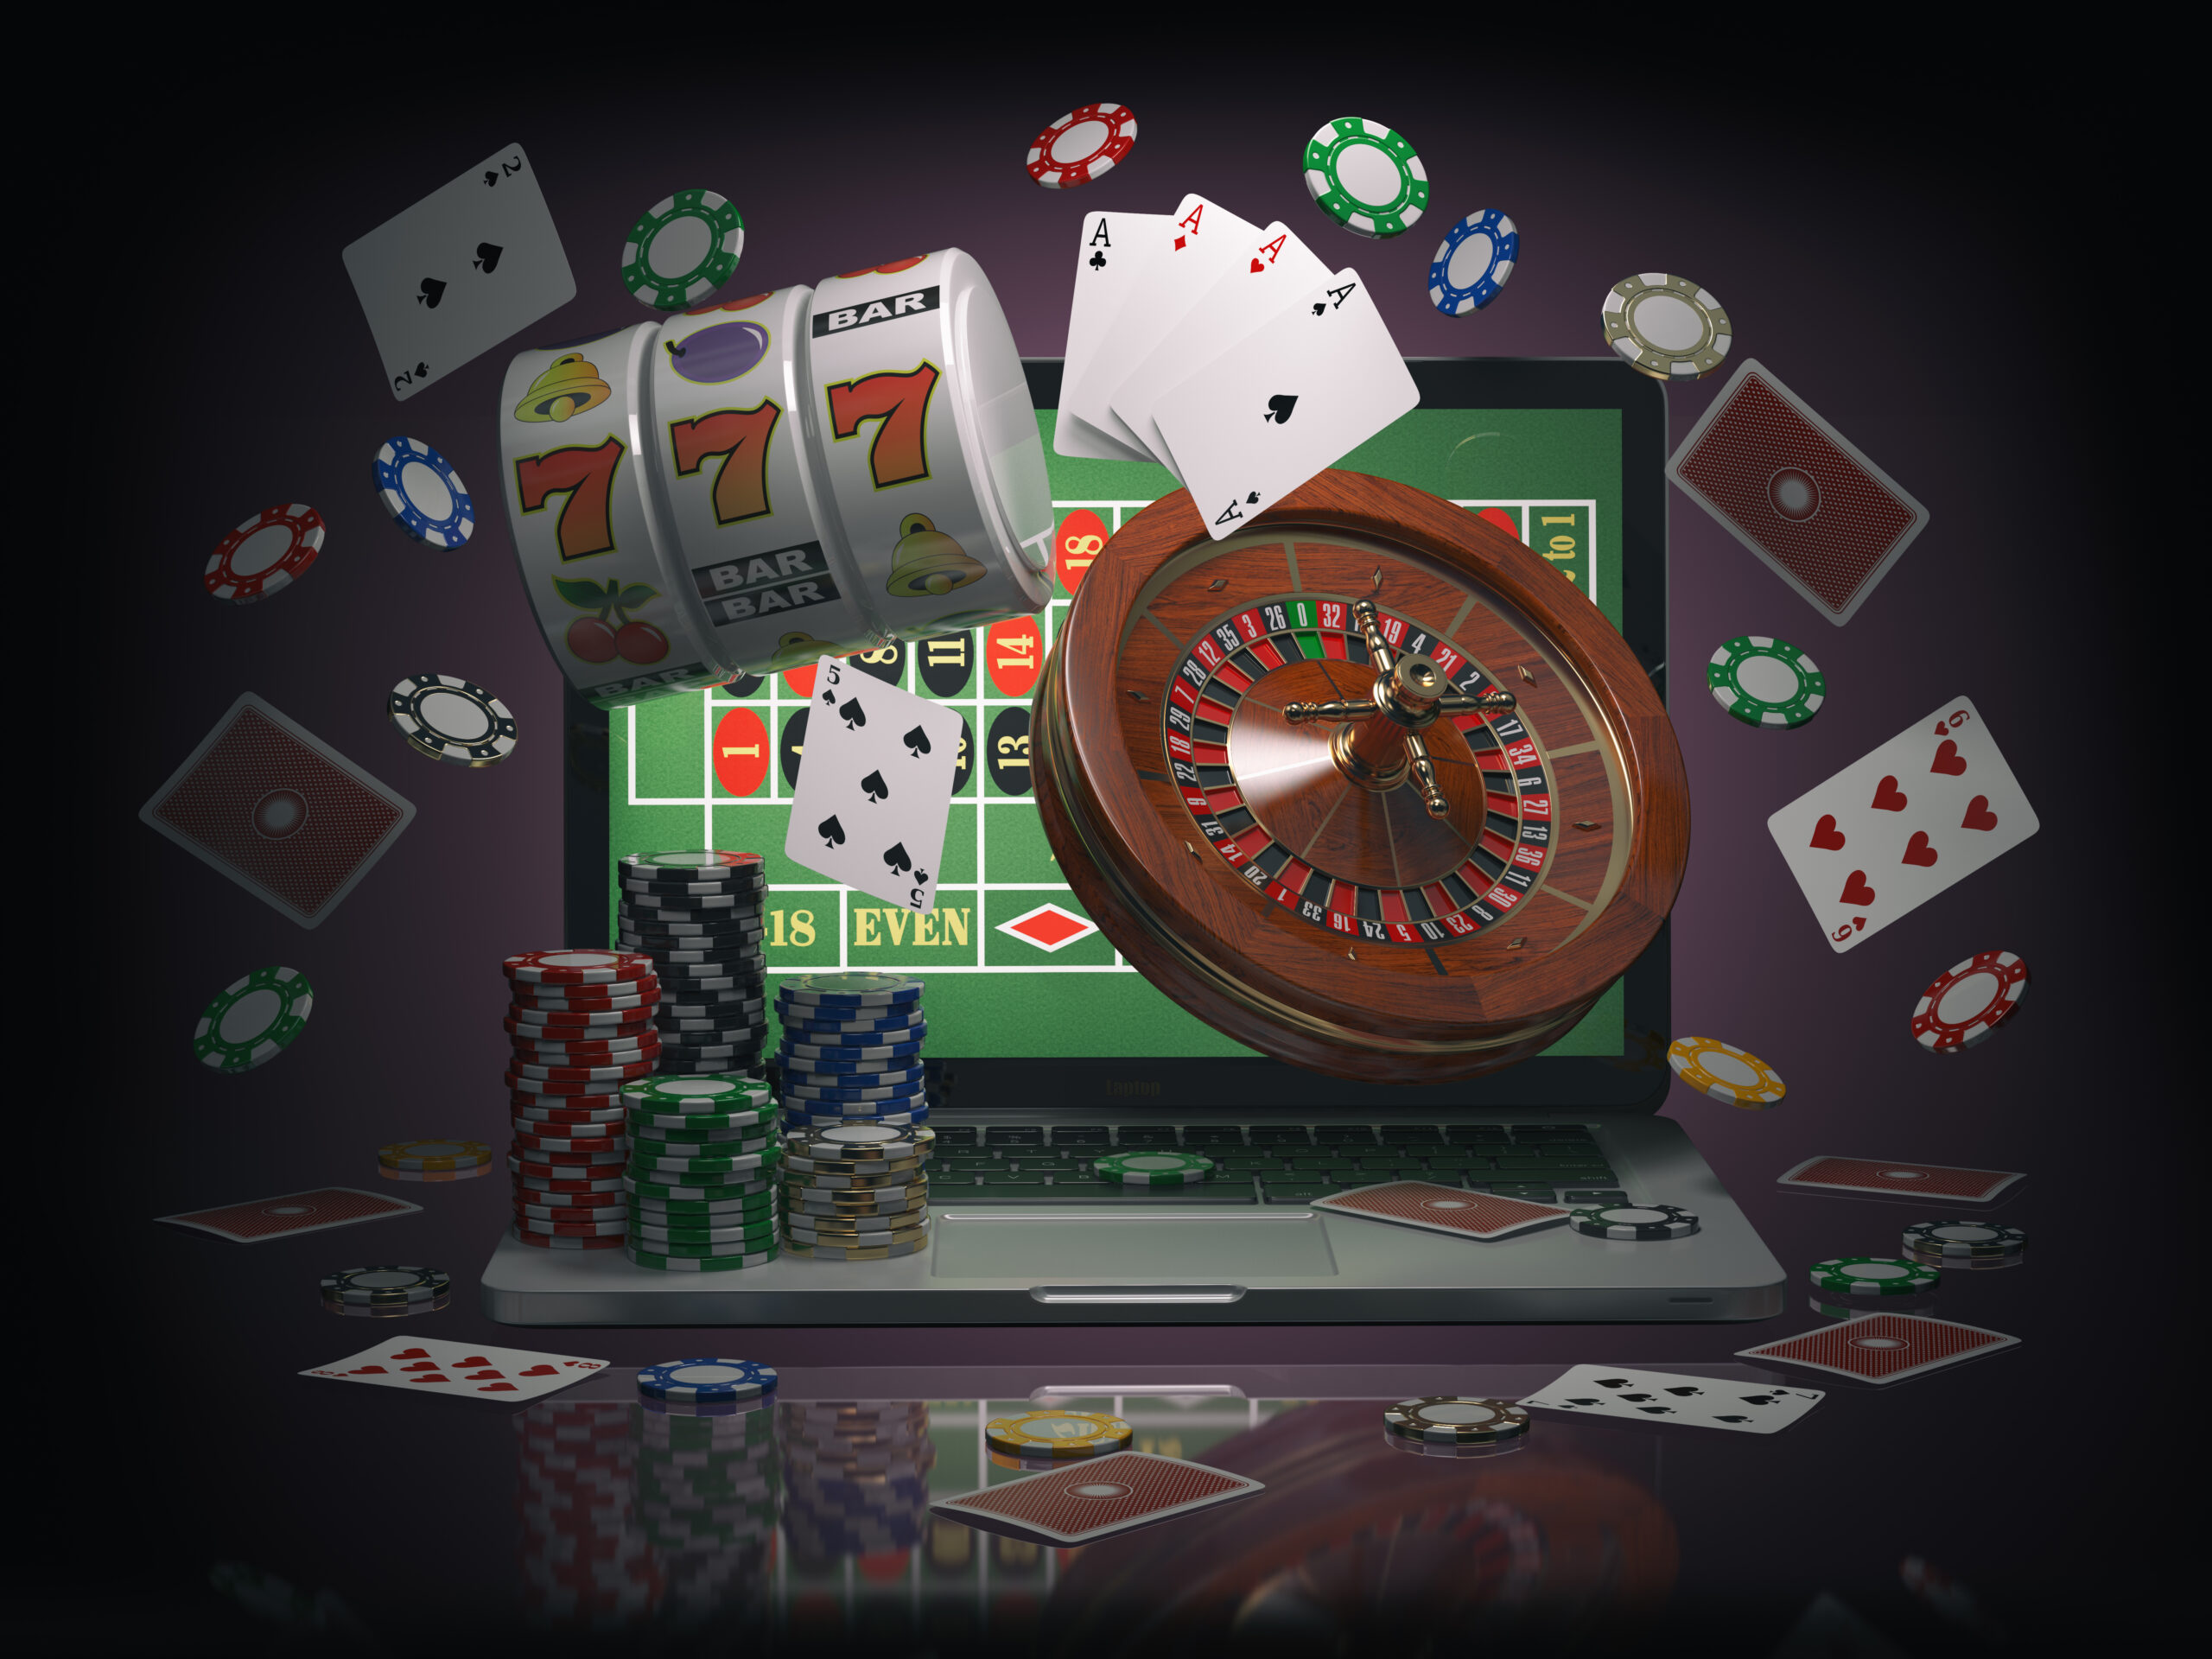 Chi altro vuole conoscere il mistero dietro Casino Online Non Aams?